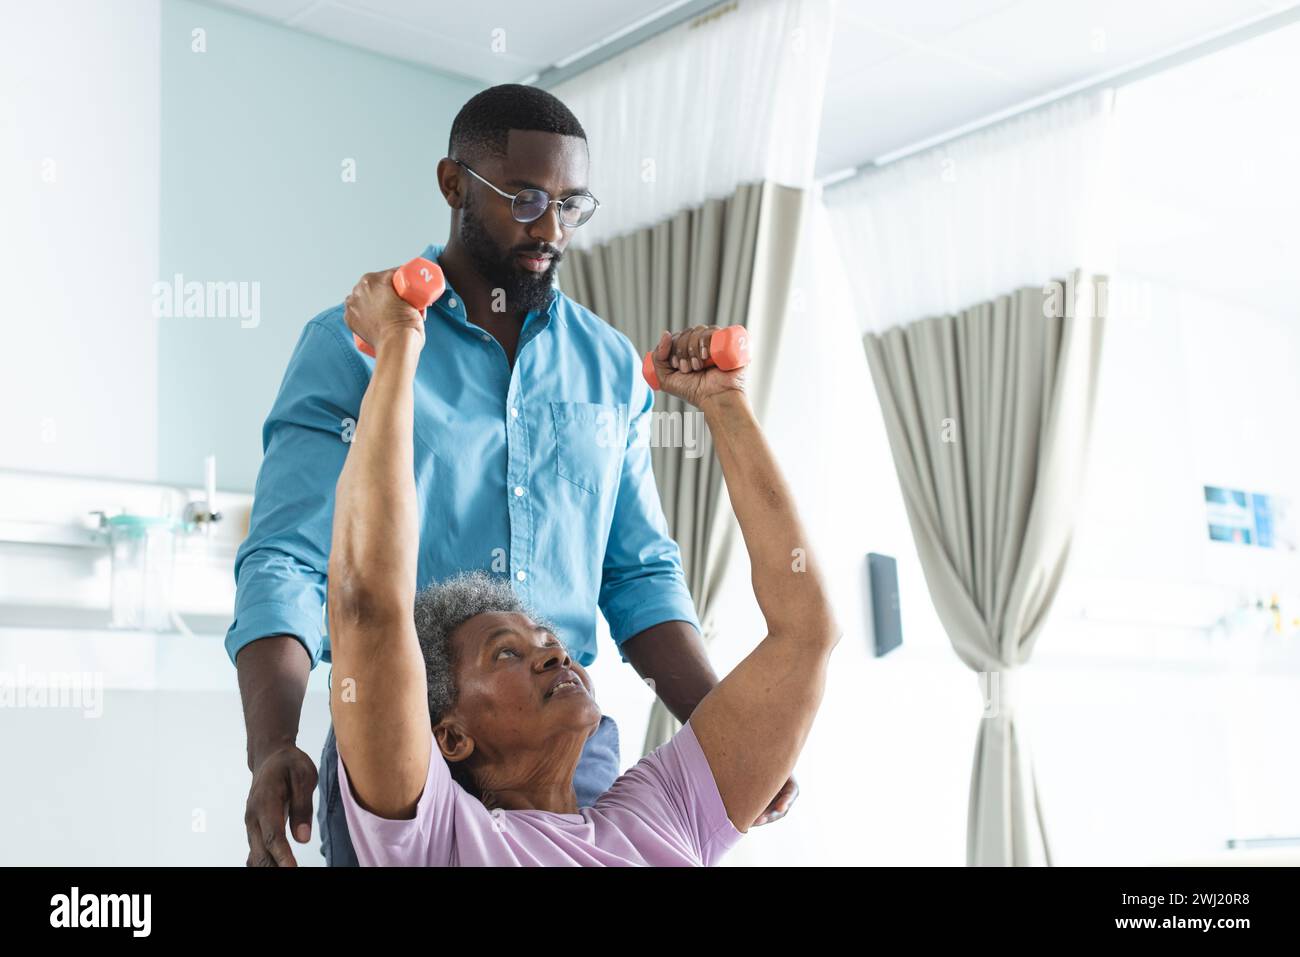 Mujer mayor afroamericana que hace ejercicio con pesas y médico masculino que aconseja en la habitación del hospital Foto de stock